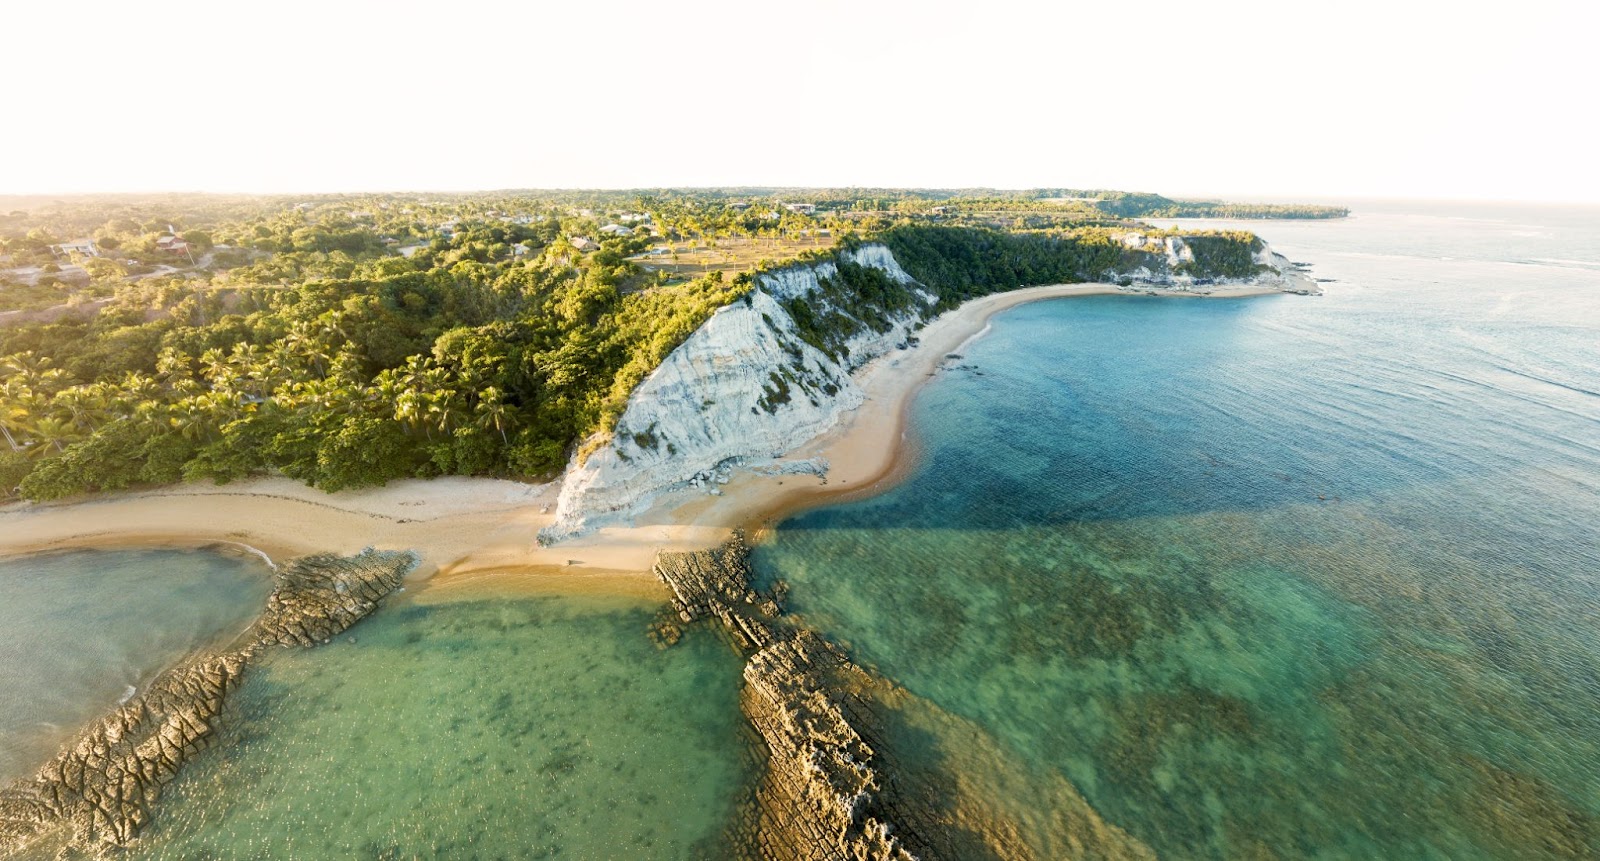 Vista panorâmica de duas praias da Bahia. A maré baixa revela as formações rochosas e corais debaixo do mar esverdeado. Pontal com faixa de areia que contorna a grande falésia.